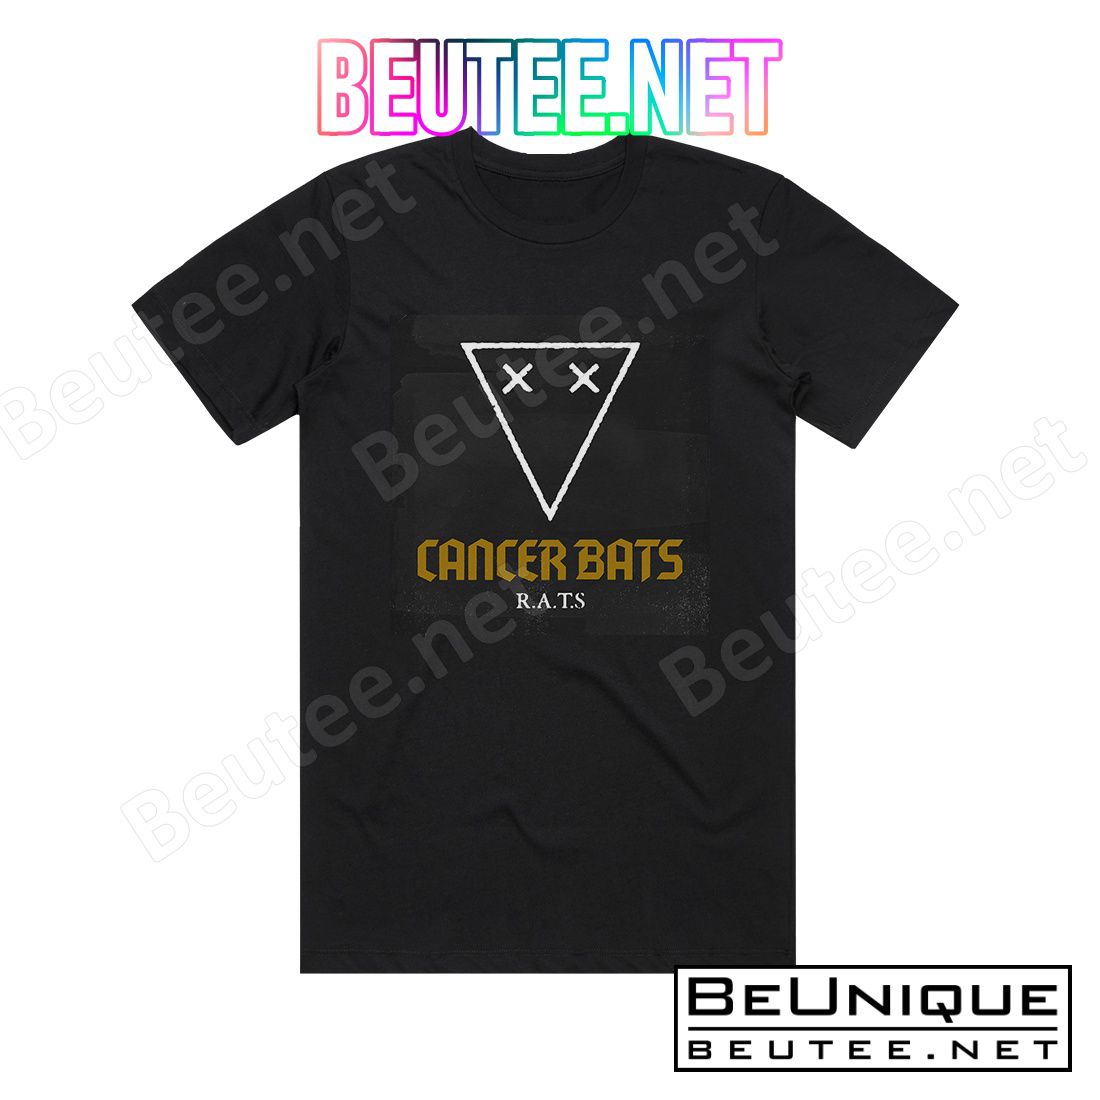 Cancer Bats Rats Album Cover T-Shirt